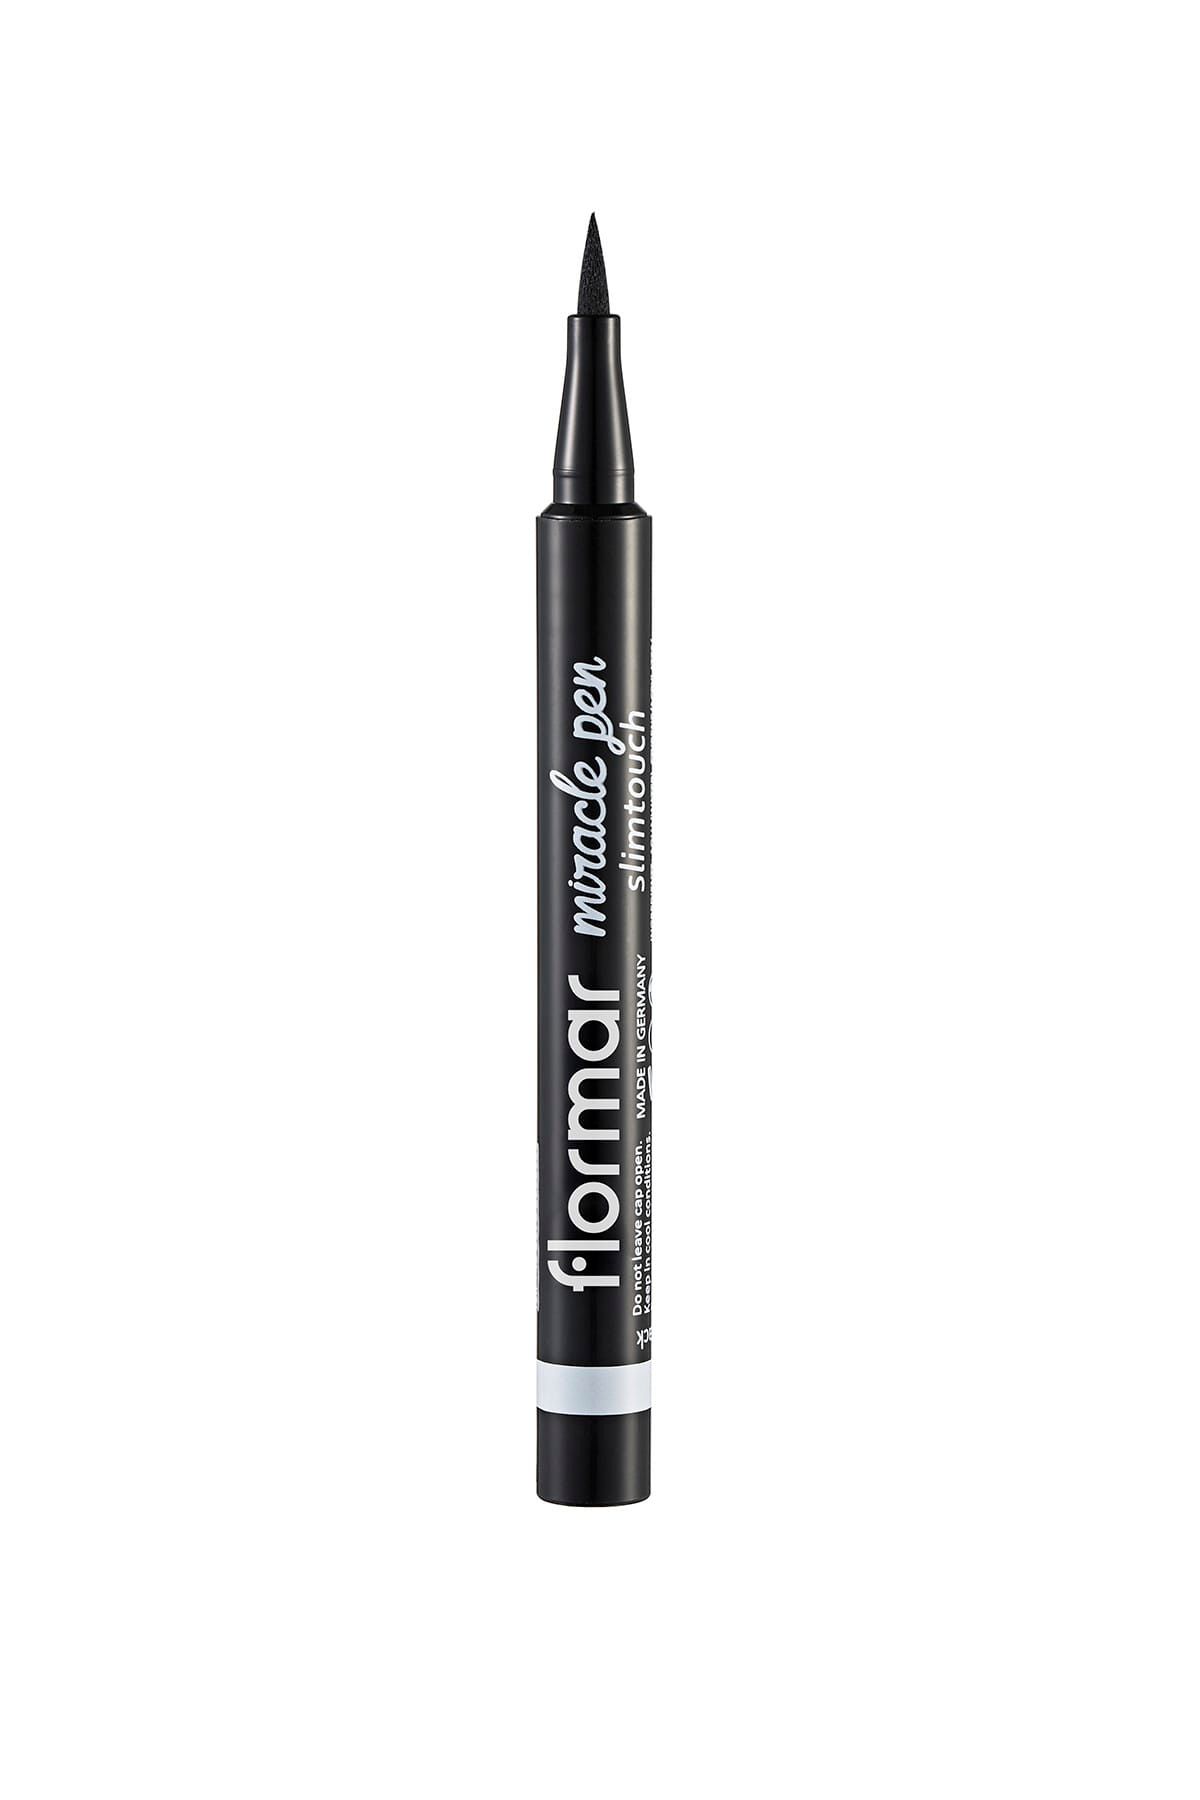 Flormar Siyah Eyeliner - Miracle Pen Slim Touch 004 Onyx Black 8690604259076